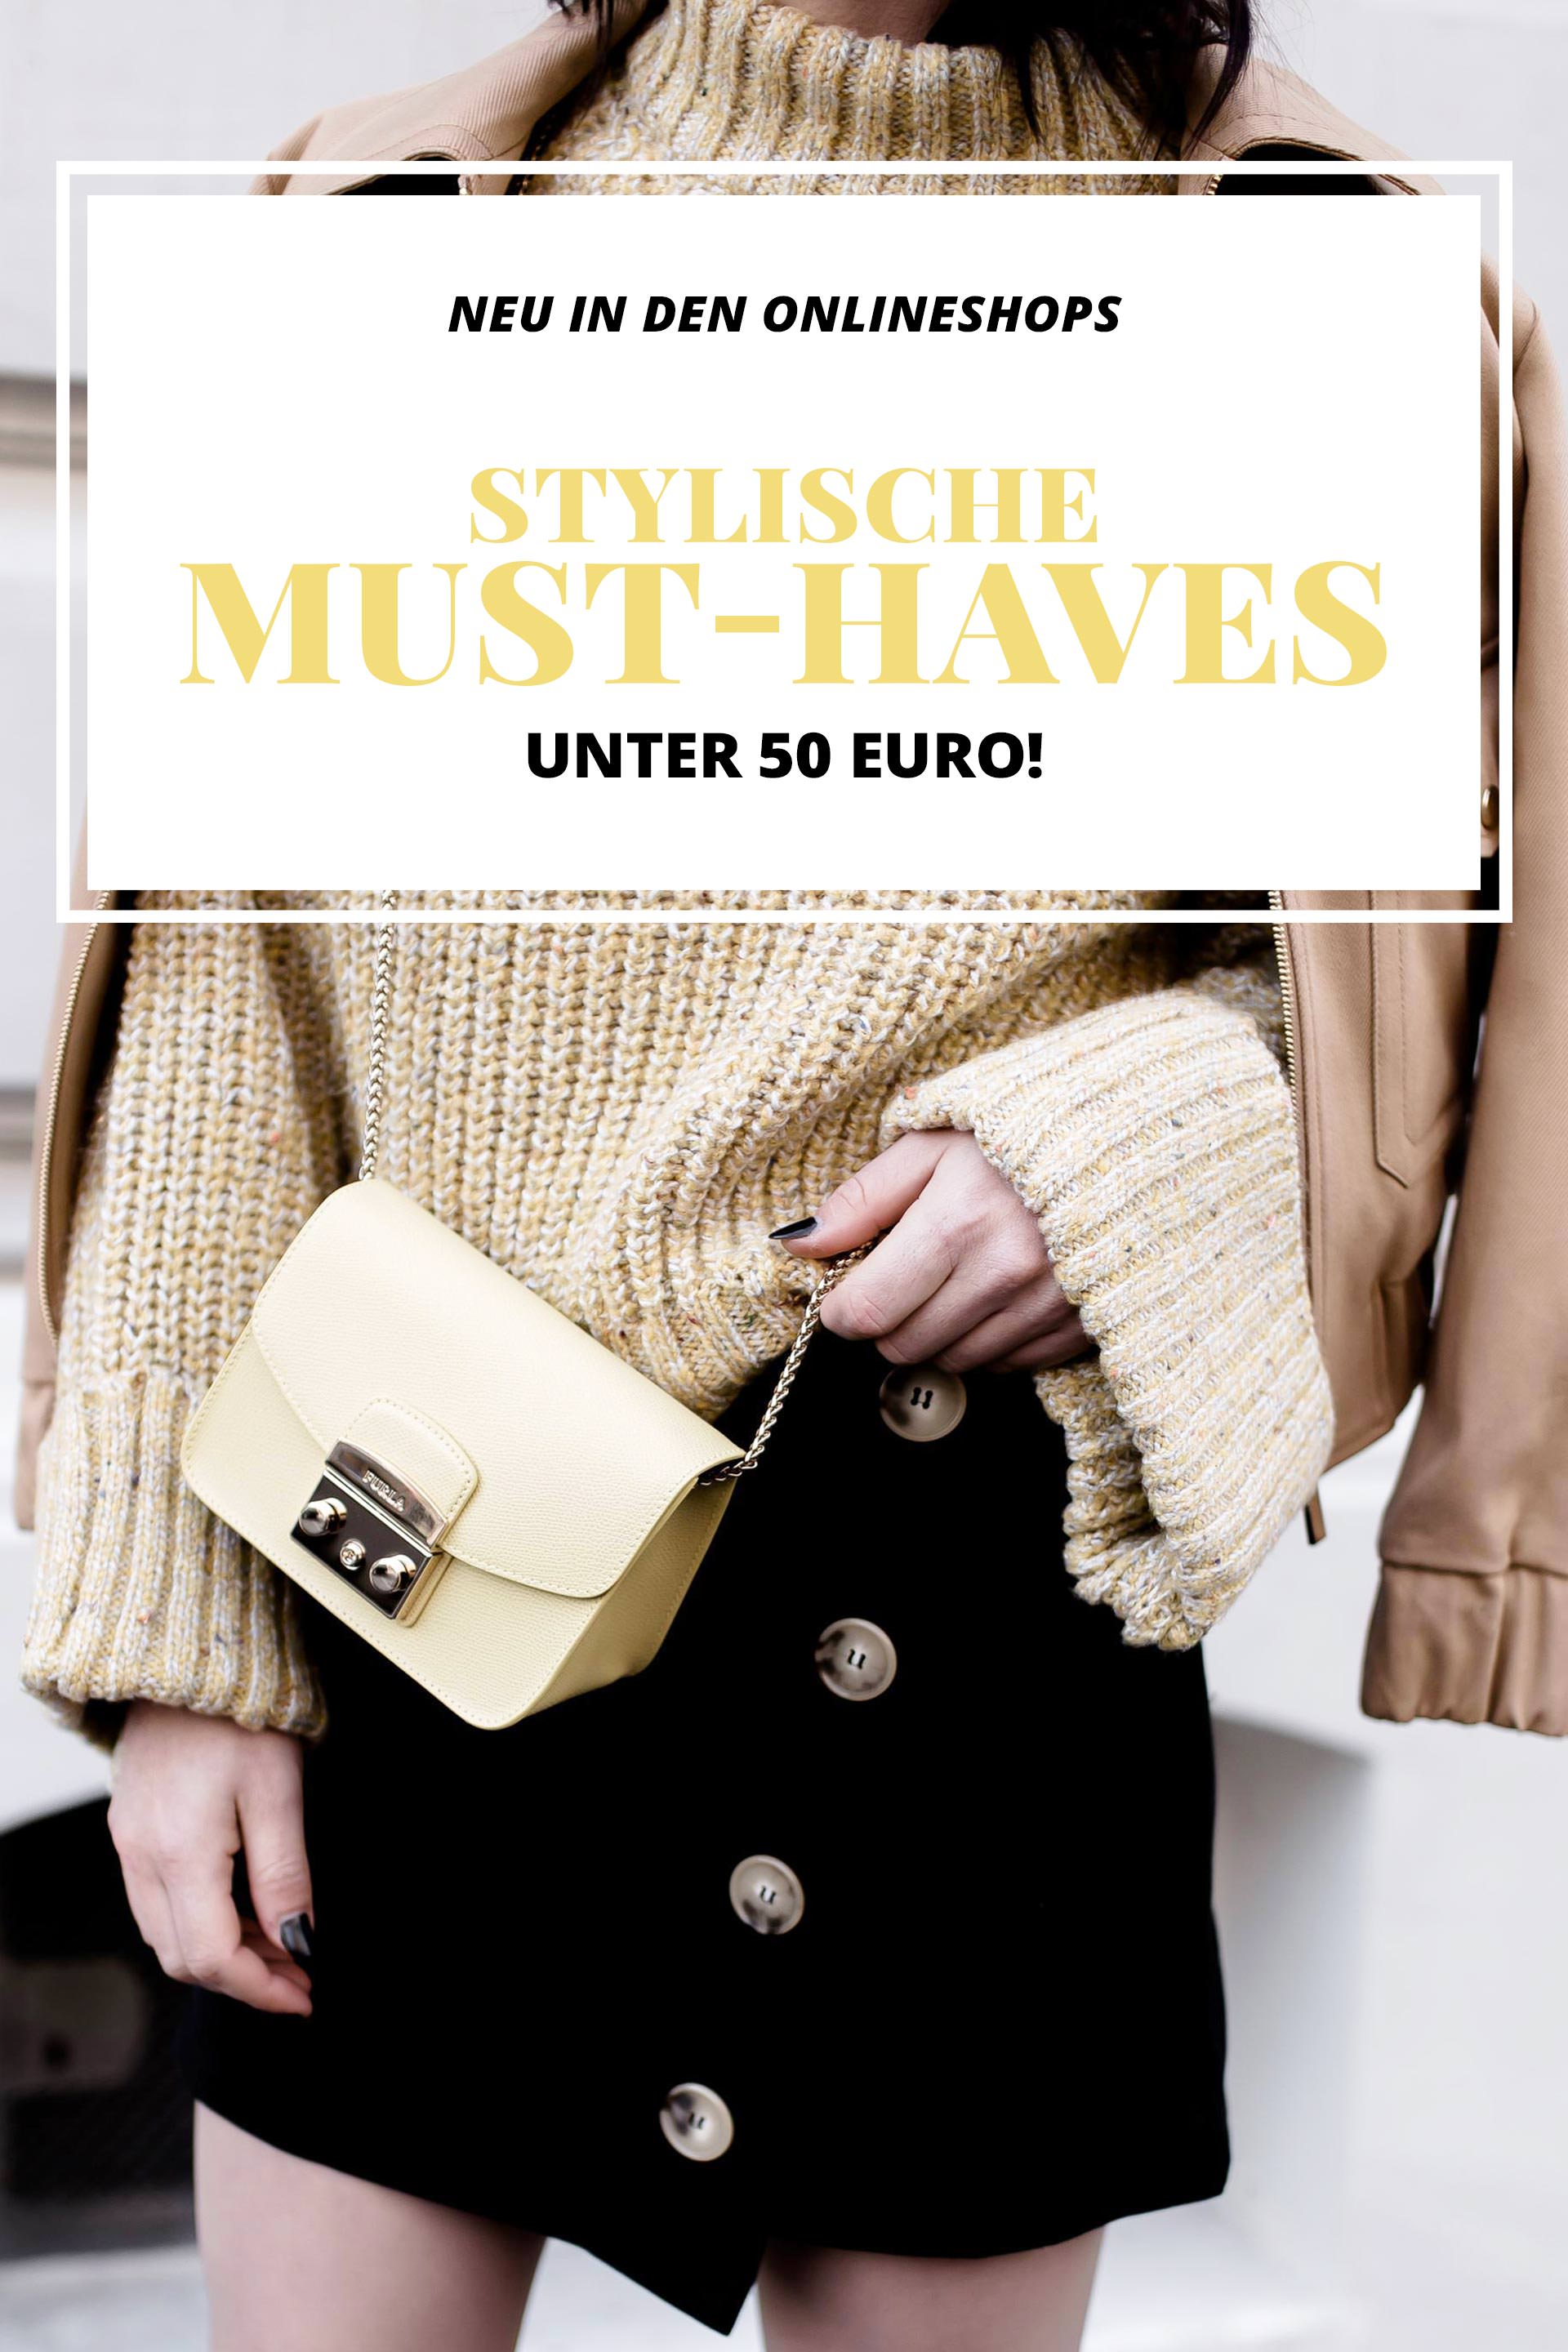 Neu in den Onlineshops, stylische Mode Must haves unter 50 Euro, Trendupdate, was ist 2018 modern, Modetrends 2018, Fashion Blogger, www.whoismocca.com